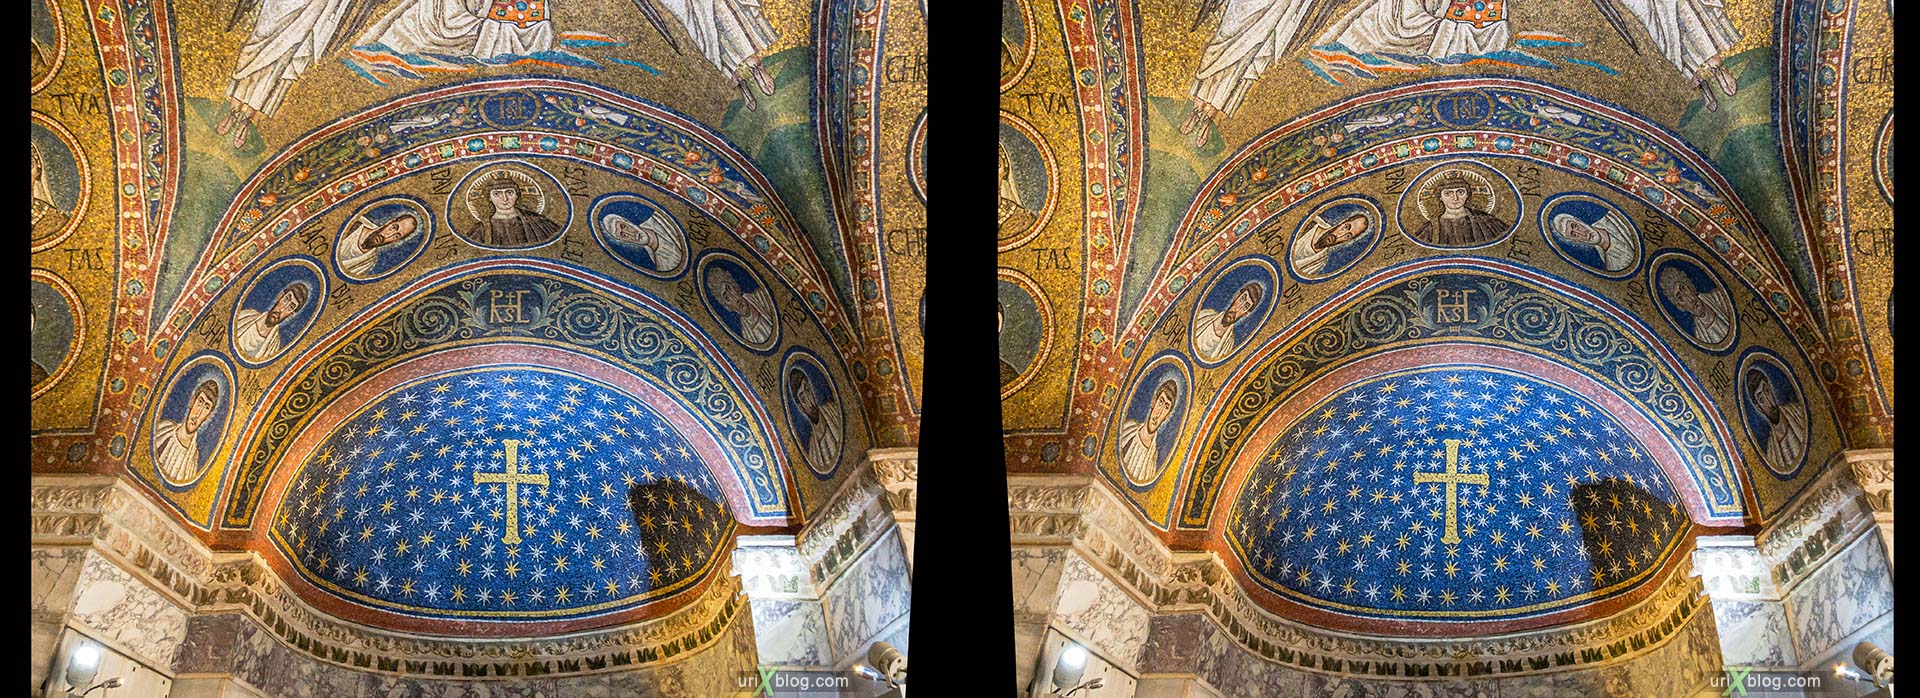 Архиепископская часовня Святого Андрея, мозаика, Равенна, Италия, 3D, перекрёстная стереопара, стерео, стереопара